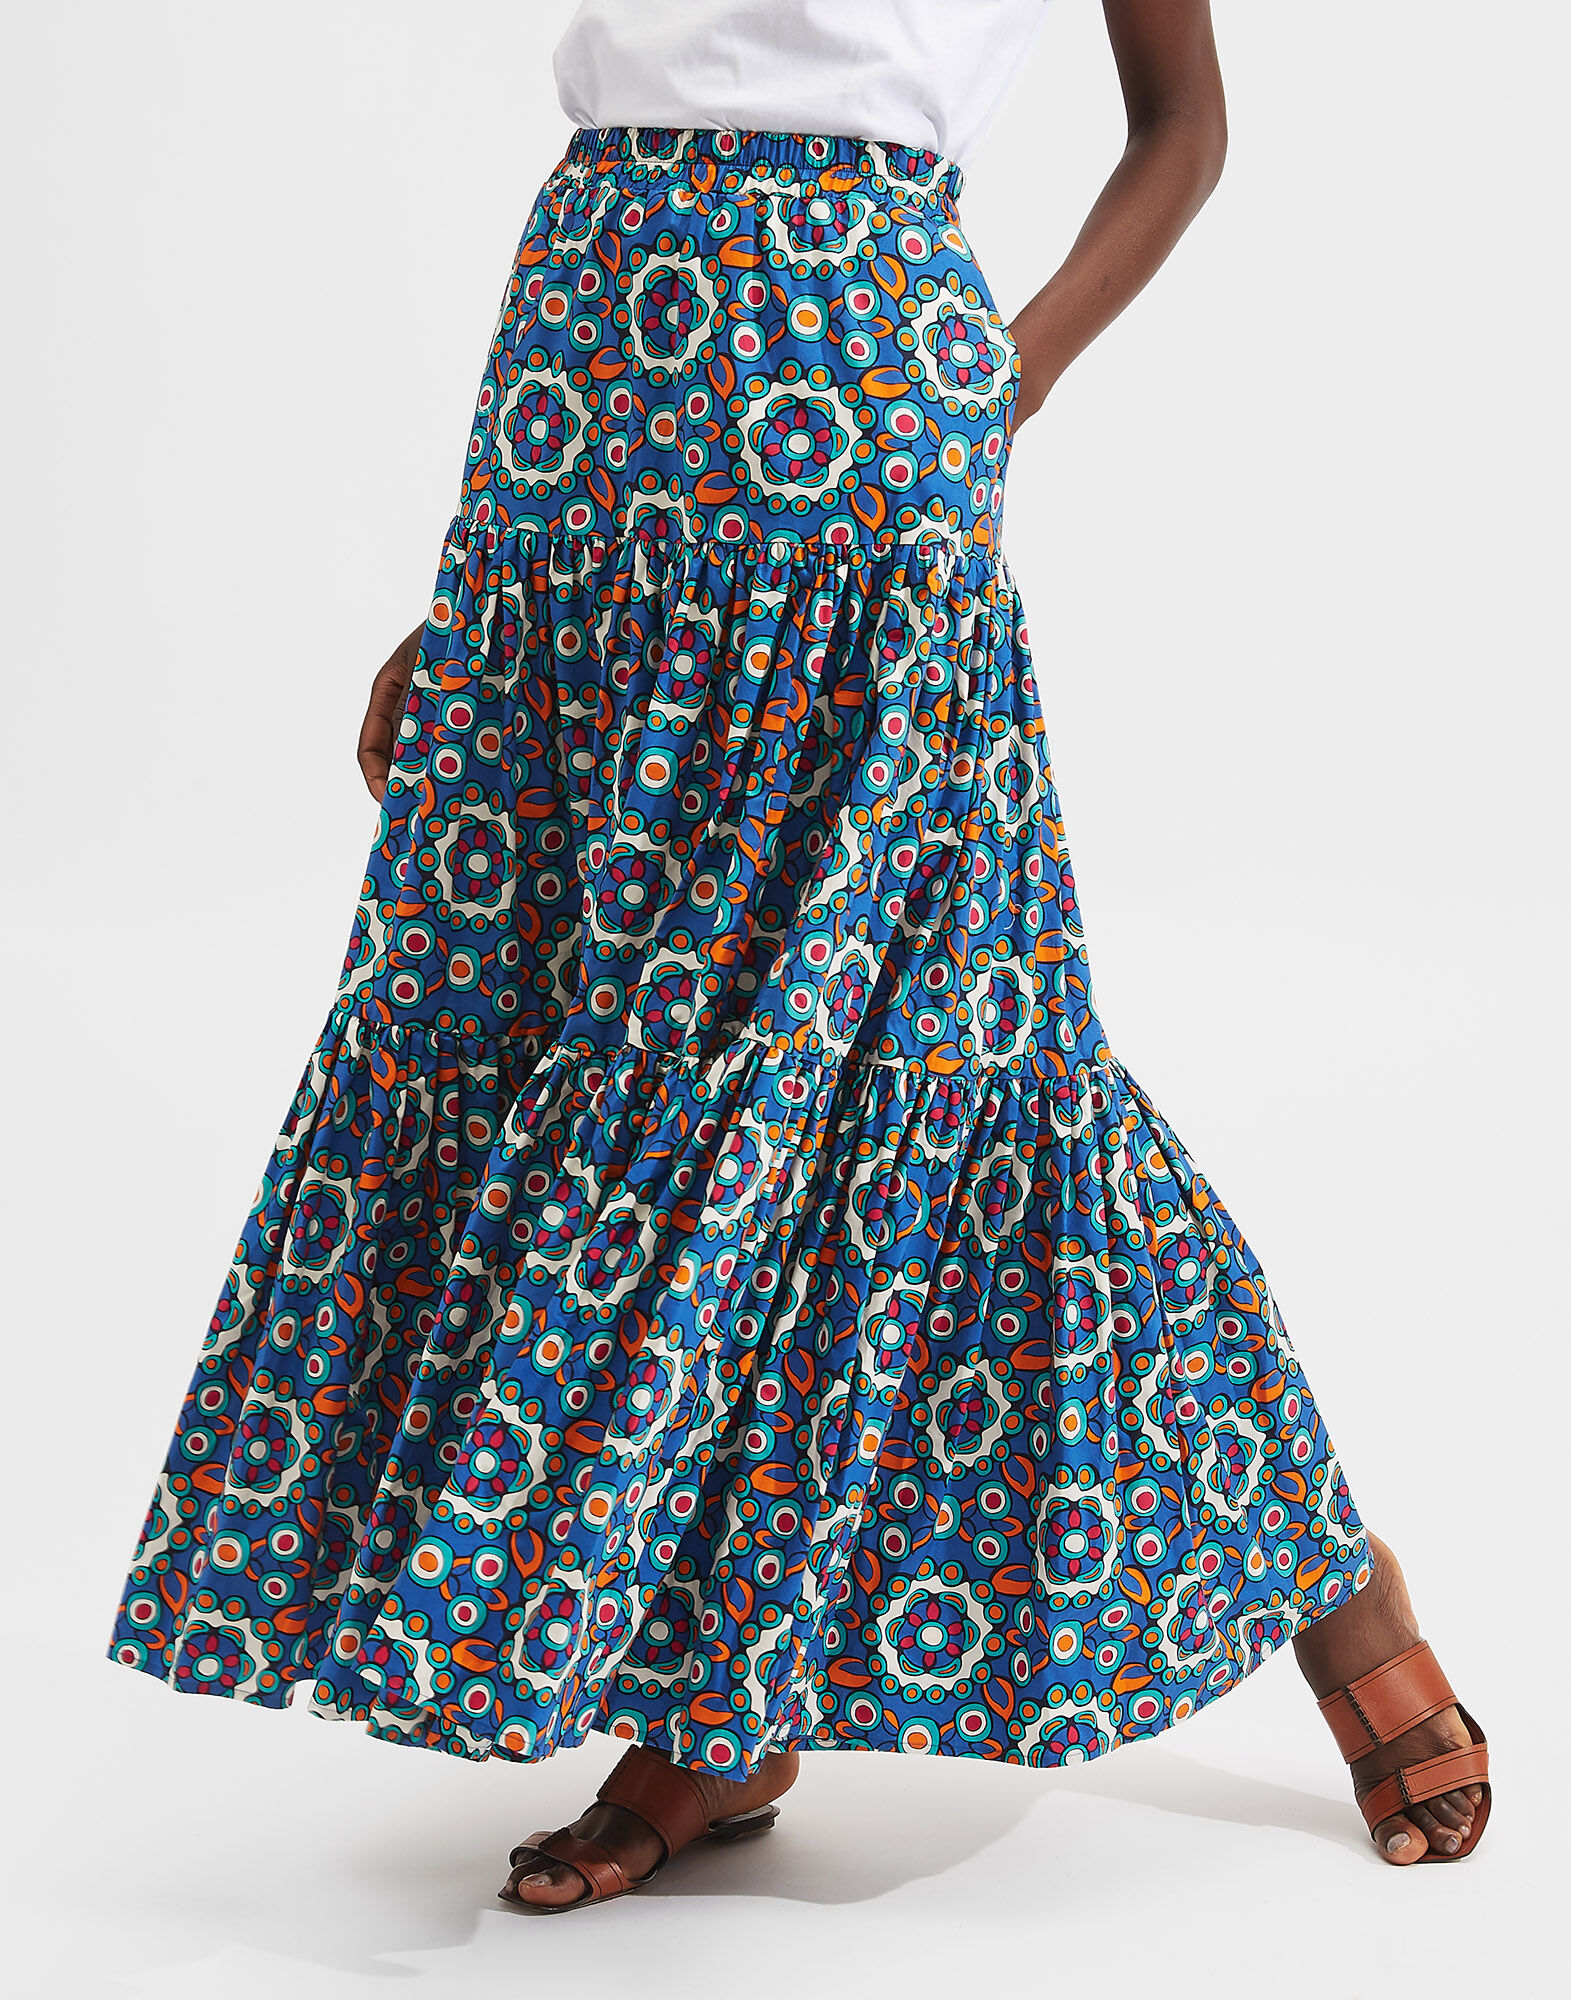 Bluette skirt [unbouquet]